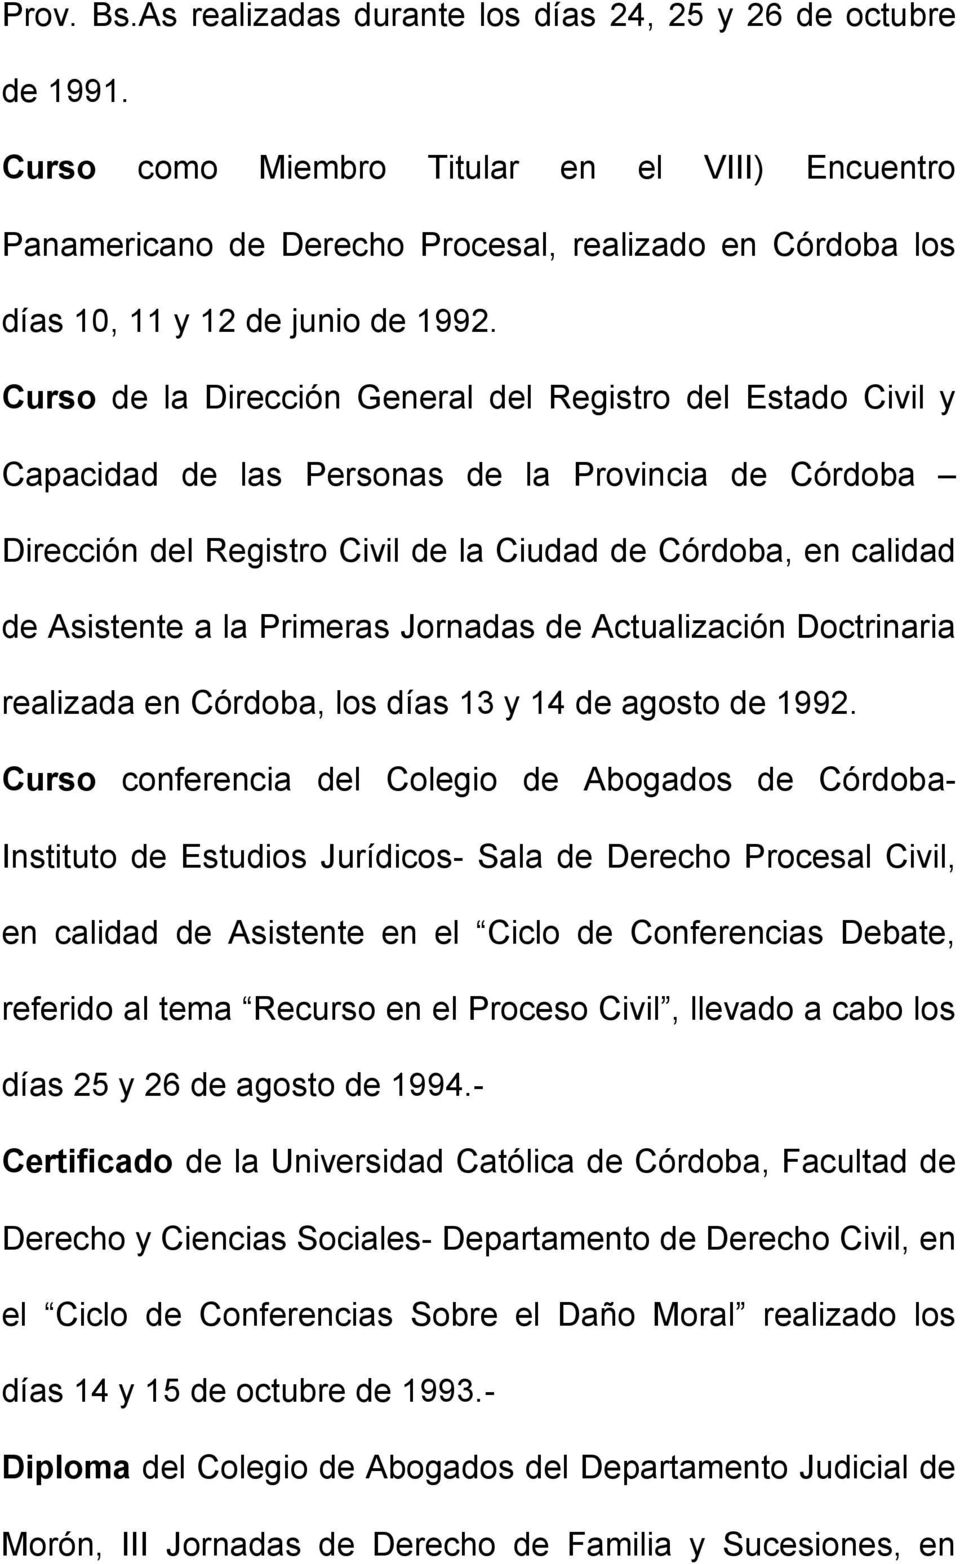 Curso de la Dirección General del Registro del Estado Civil y Capacidad de las Personas de la Provincia de Córdoba Dirección del Registro Civil de la Ciudad de Córdoba, en calidad de Asistente a la